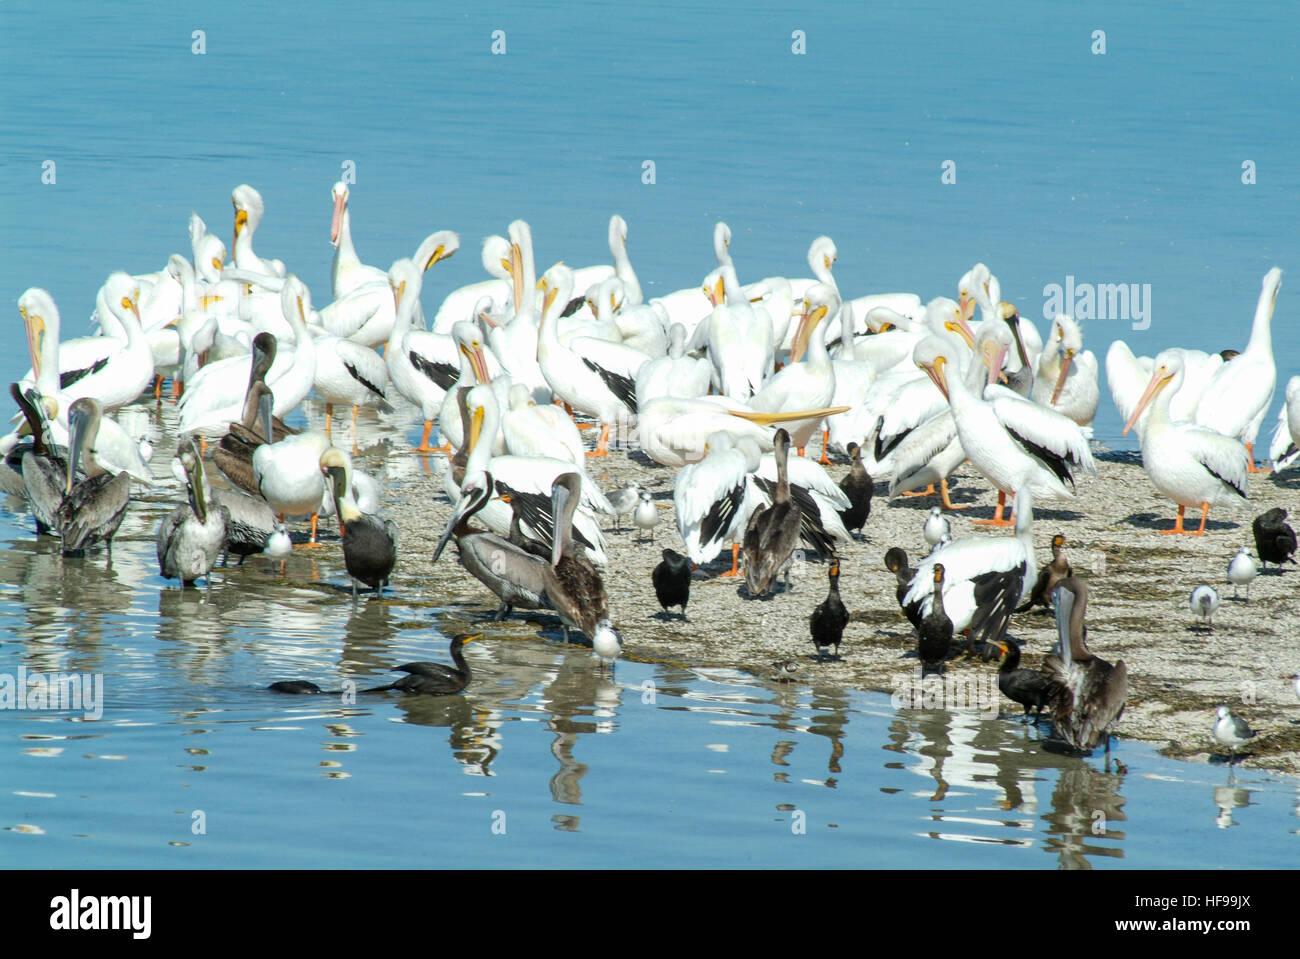 Uccelli sull'Isola de los Pajaros di Holbox, Messico Foto Stock